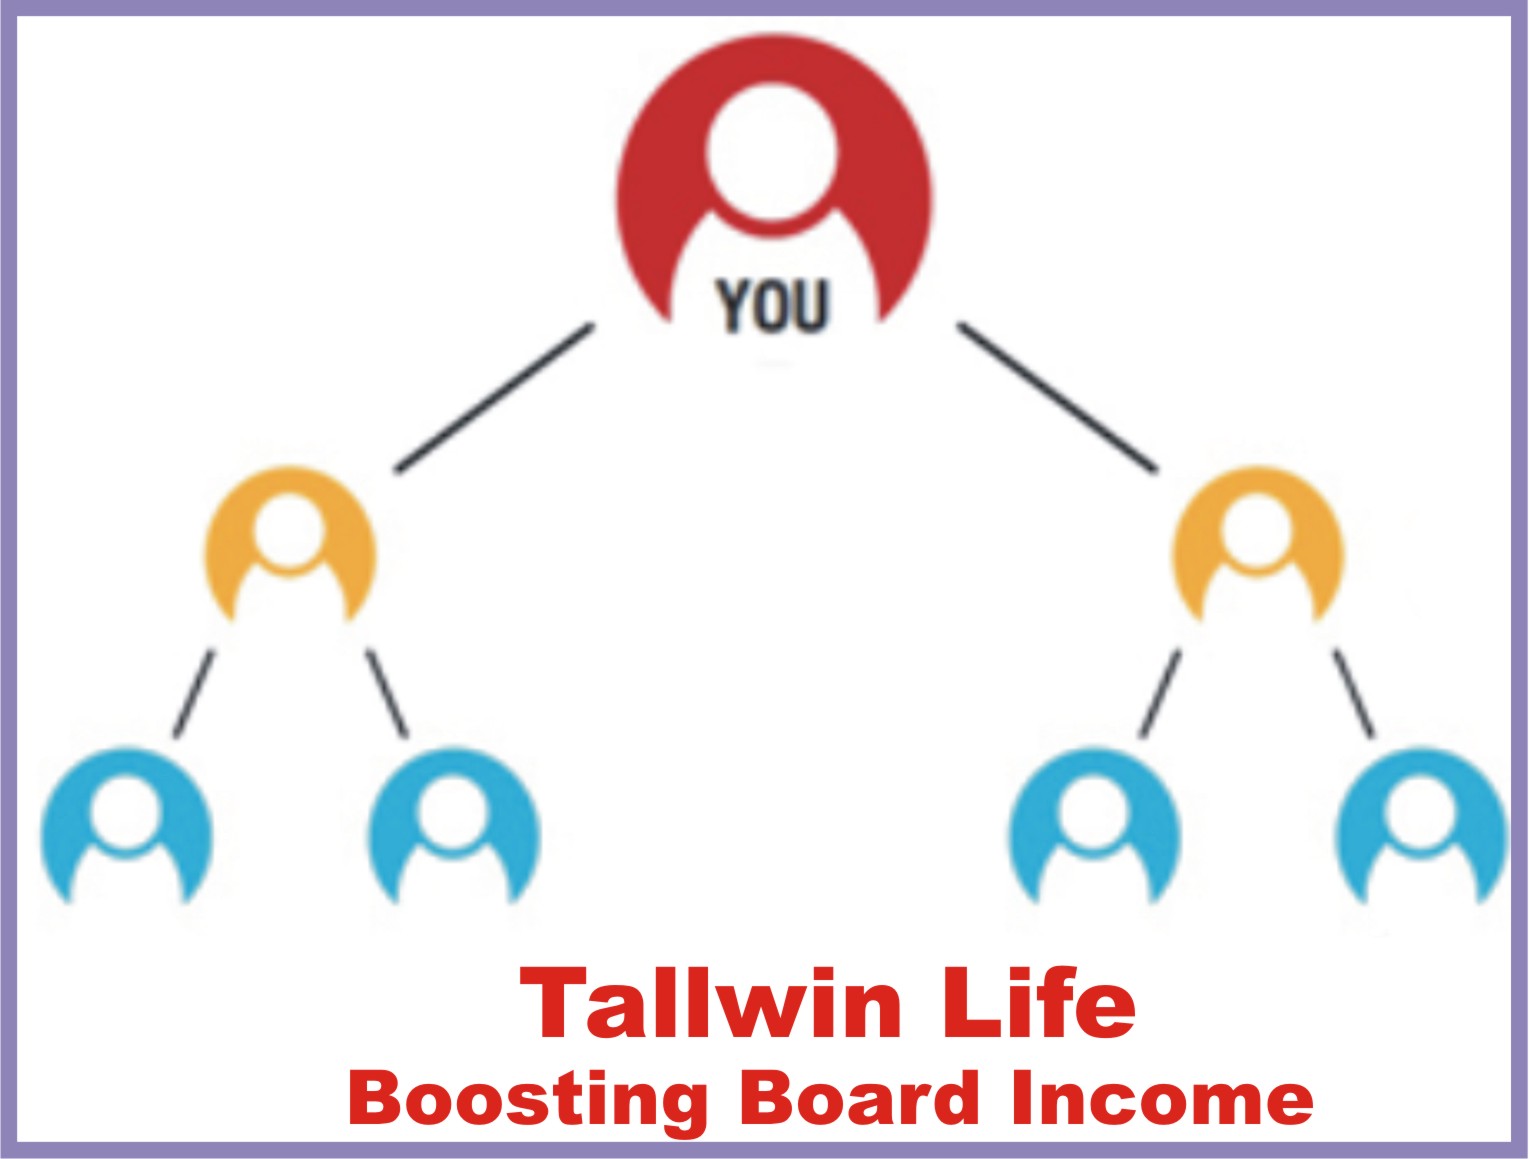 Tallwin Life kya Hai|Tallwin Life Se Paise Kaise Kamaye